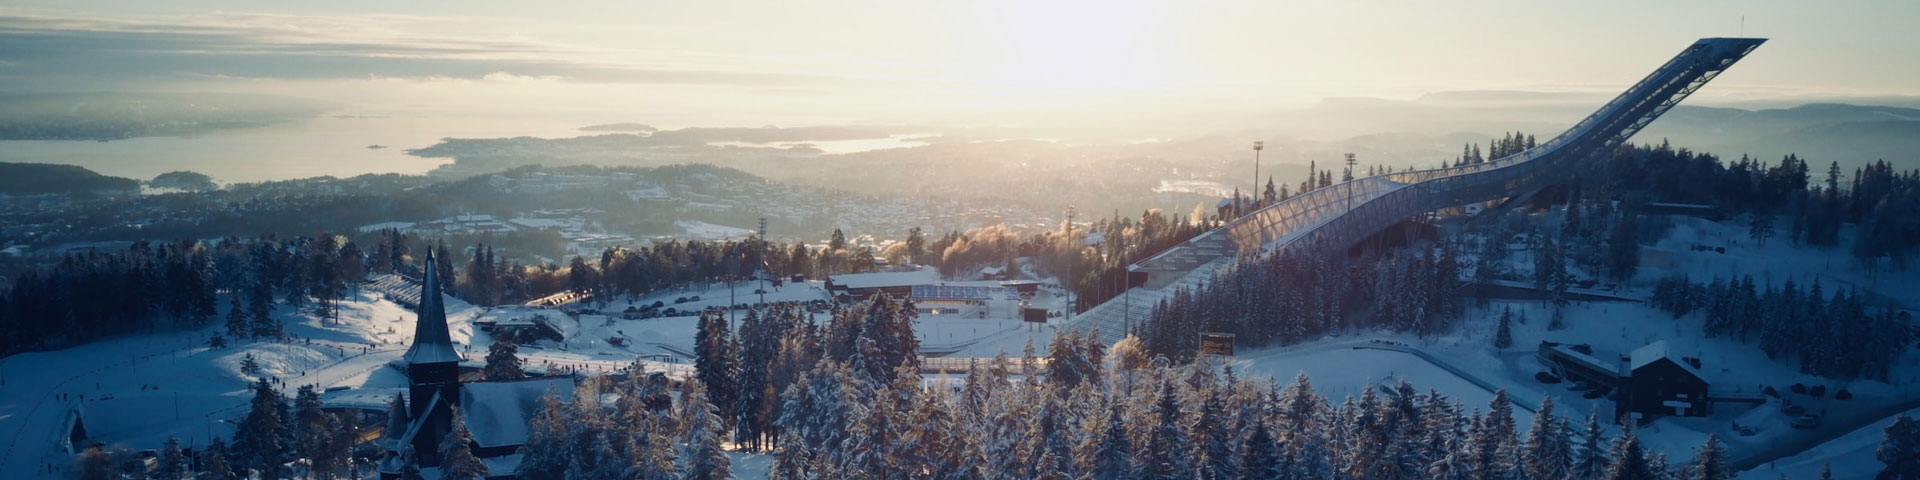 Norway winter22 1